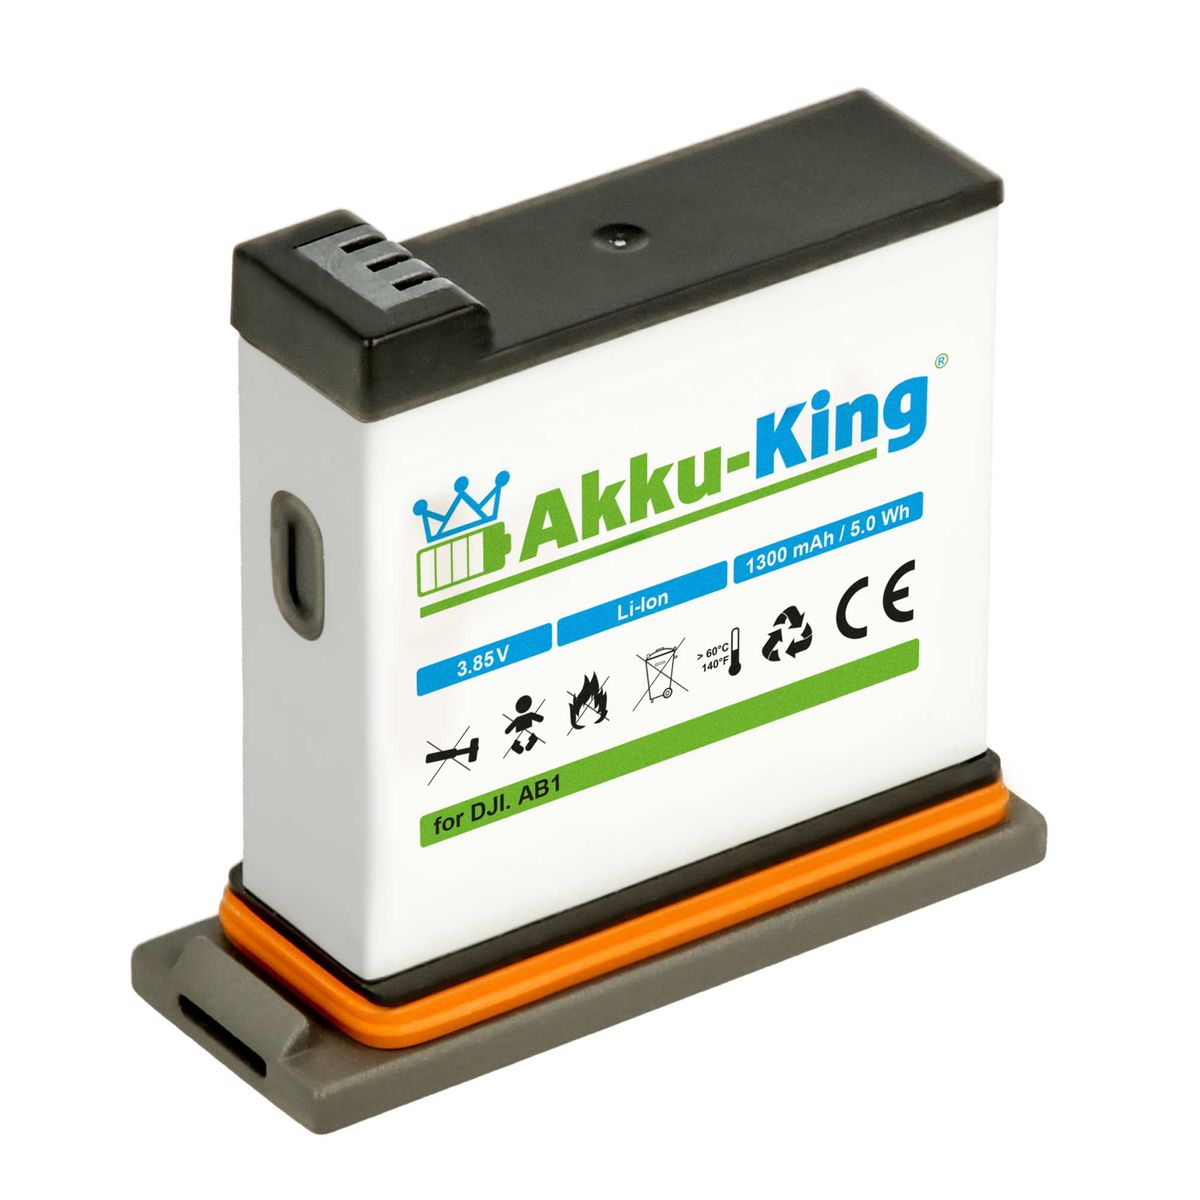 AKKU-KING Akku kompatibel mit DJI AB1 Volt, 1300mAh P01 Li-Ion Kamera-Akku, 3.85